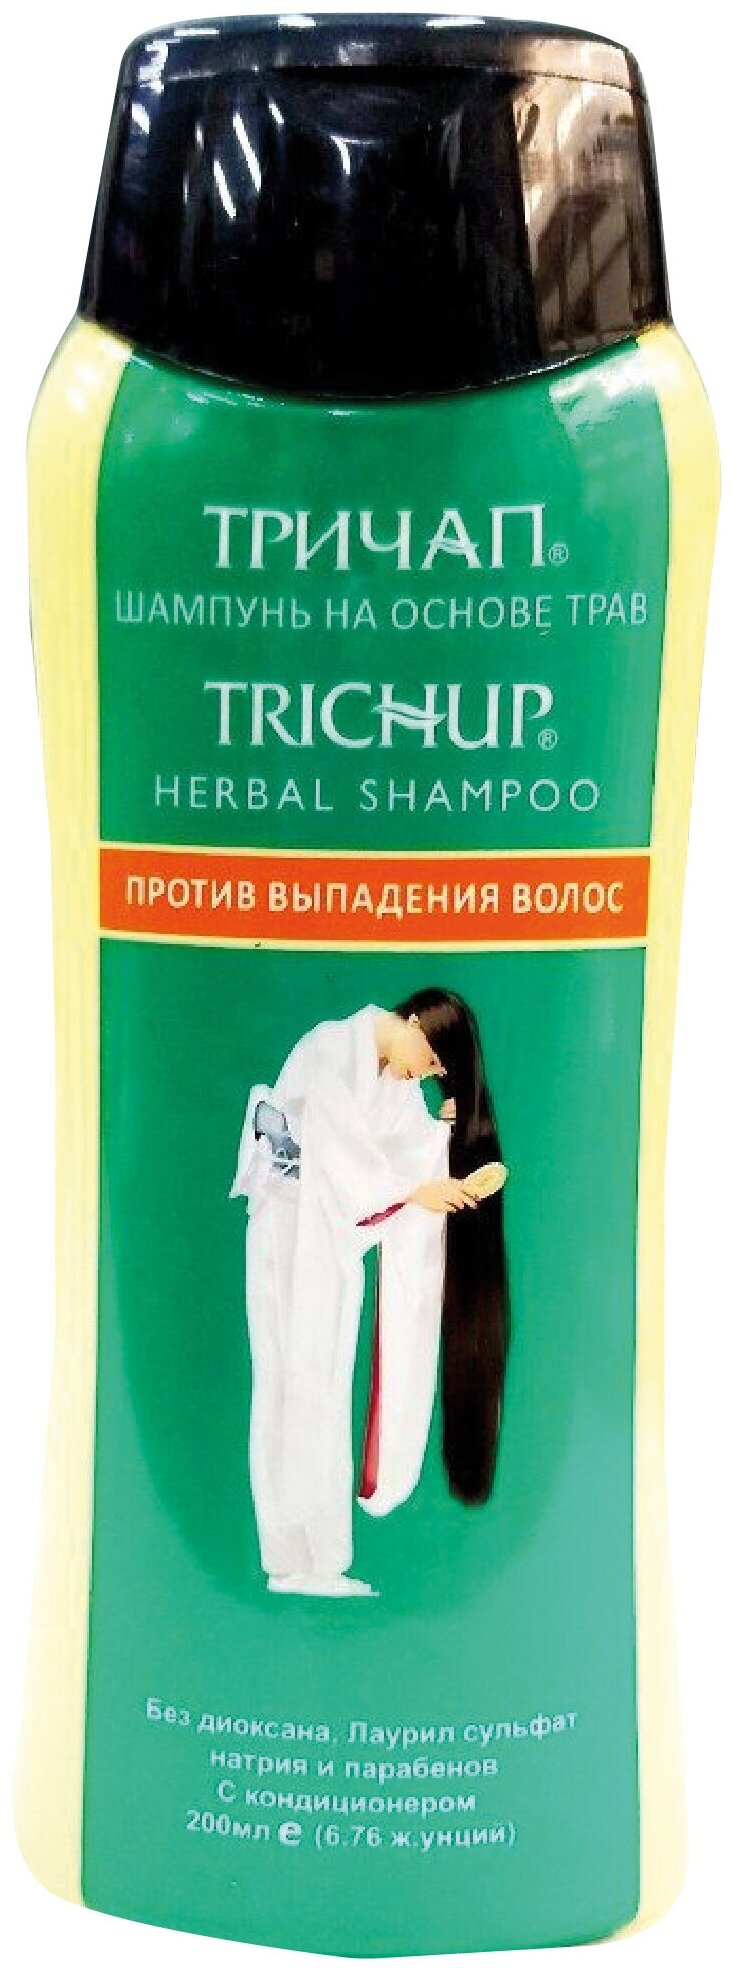 Trichup Herbal Shampoo / Шампунь Тричап Против выпадения волос 200 мл